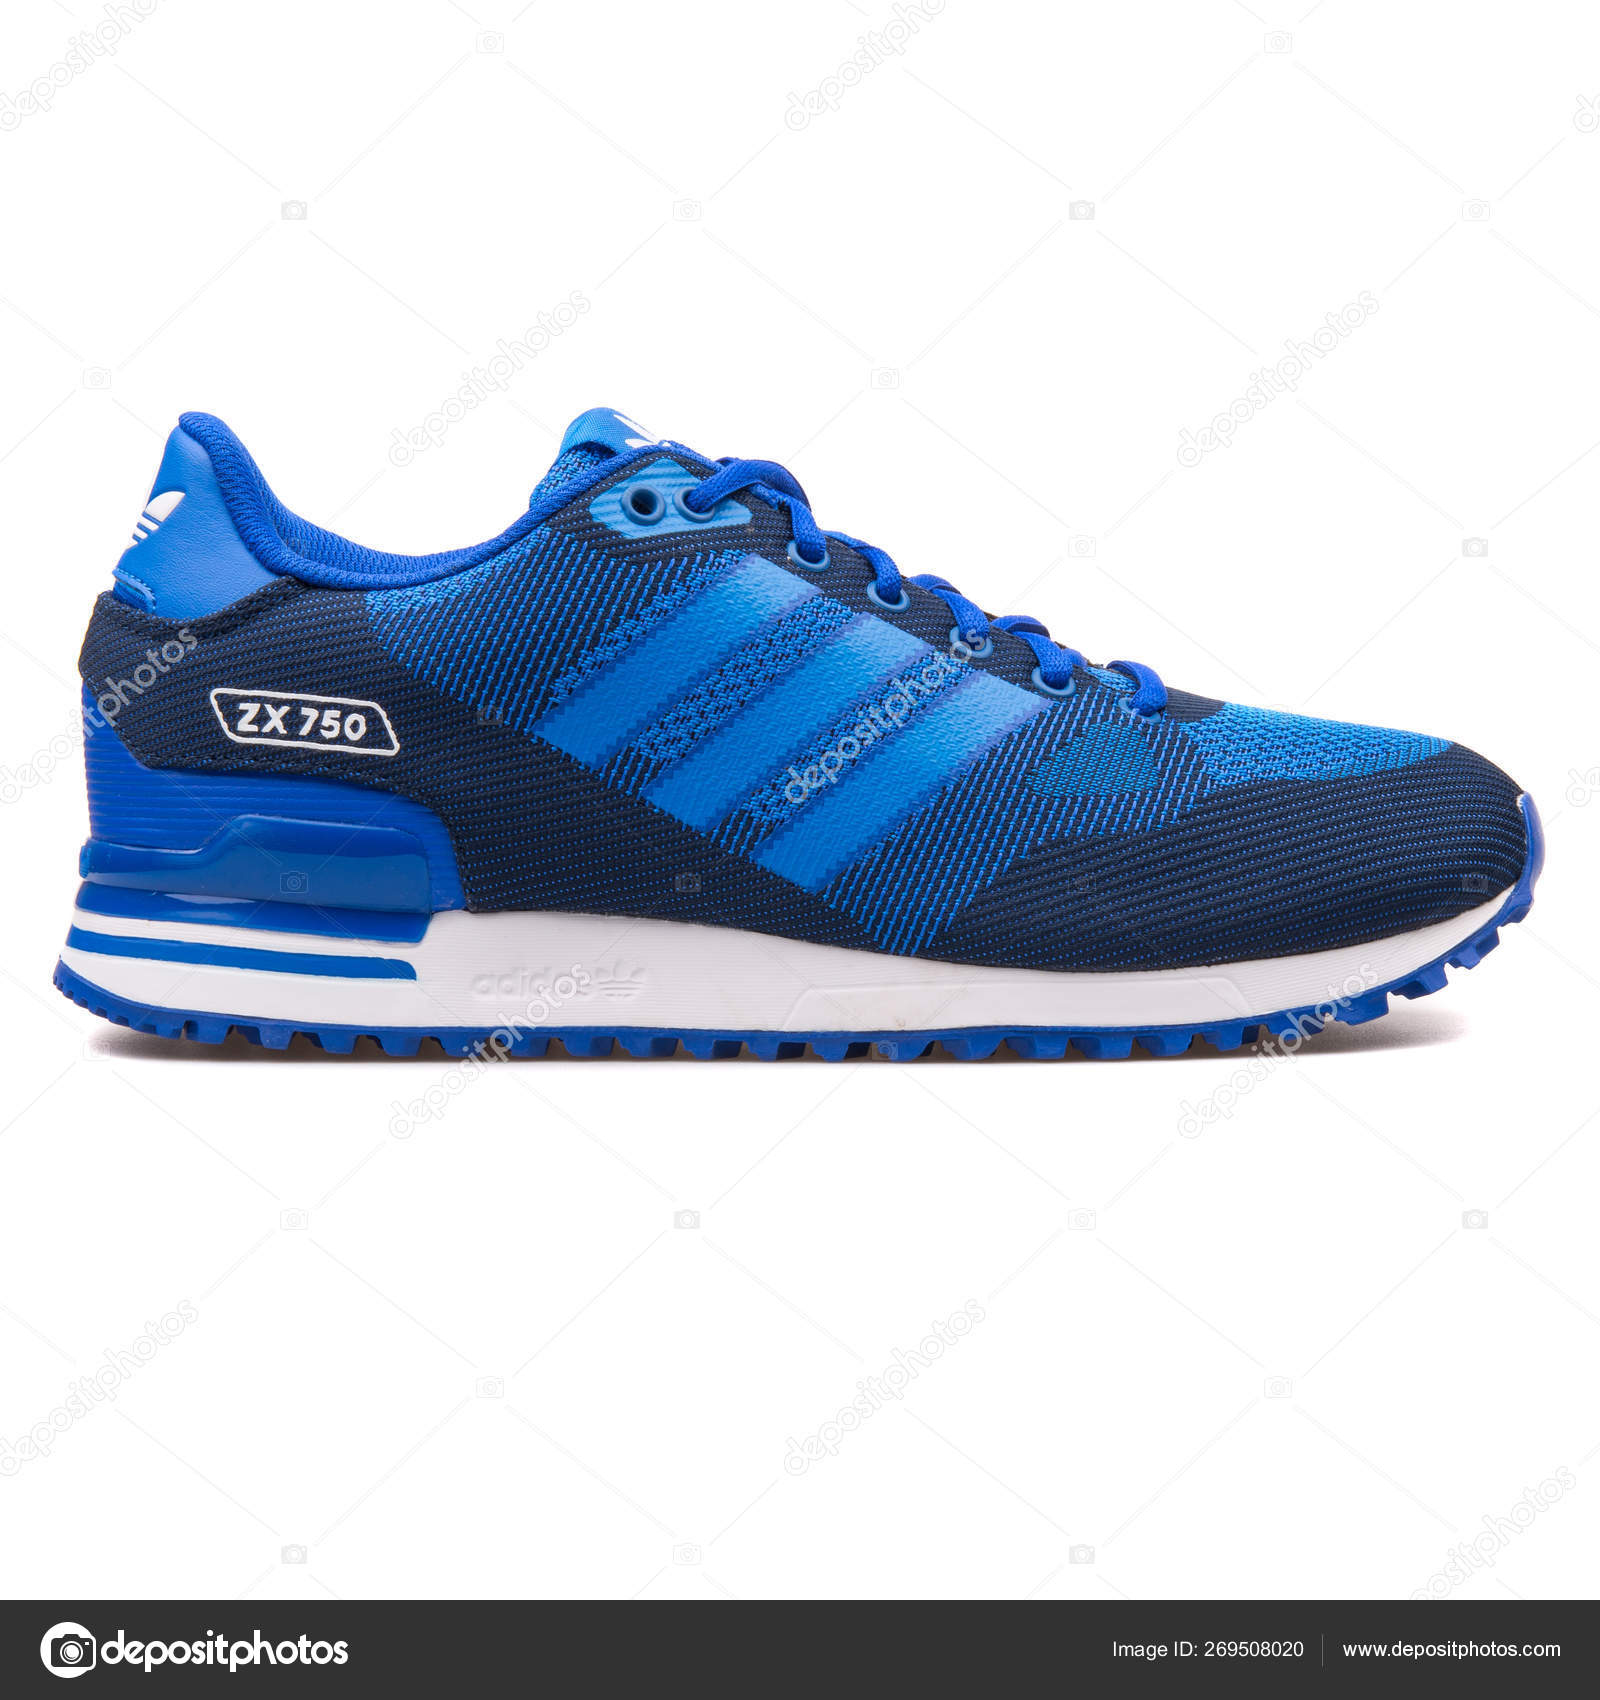 adidas zx 750 wv blue